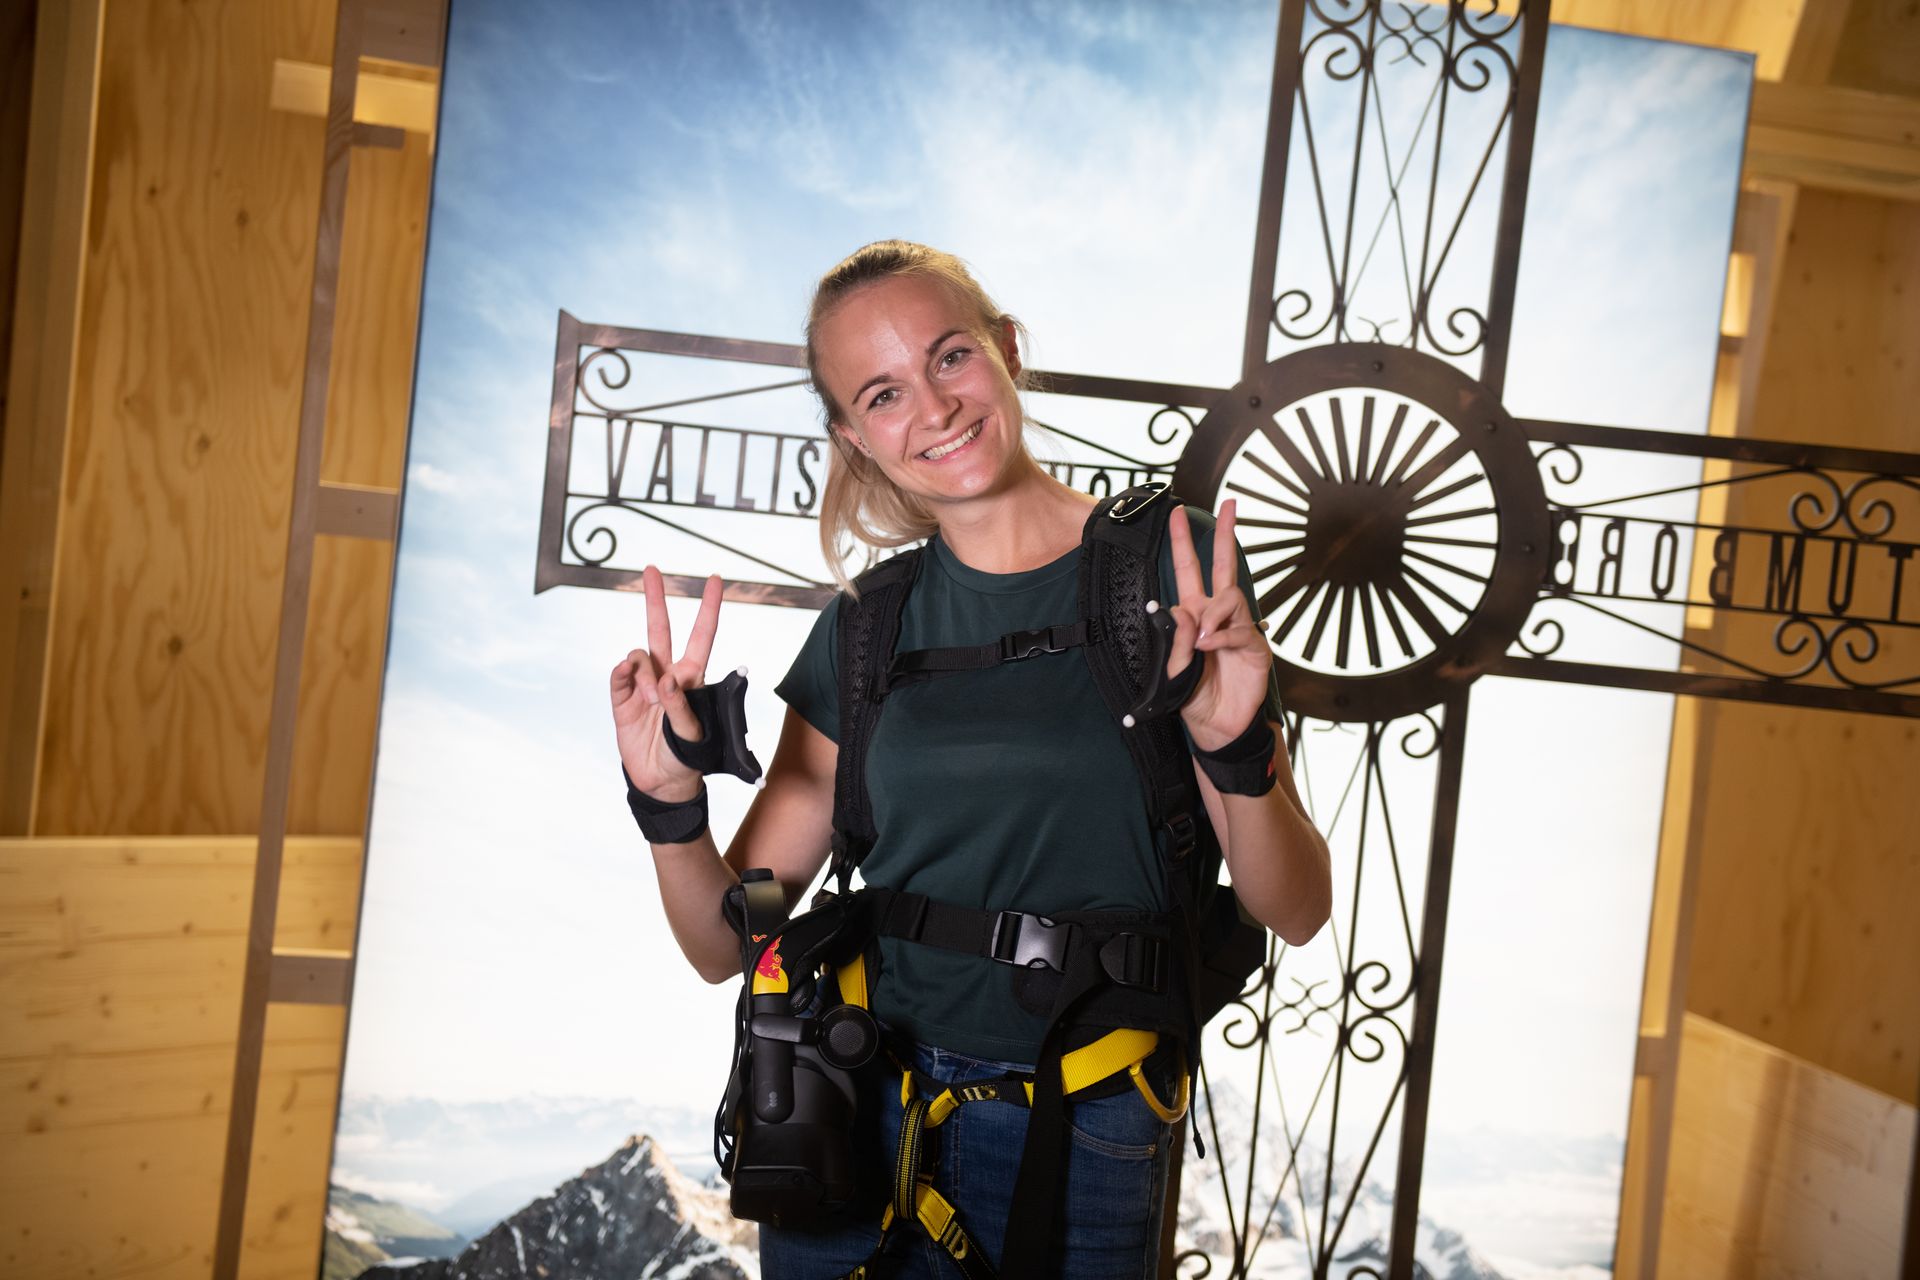 Στο Ελβετικό Μουσείο Μεταφορών στη Λουκέρνη, είναι δυνατή η εικονική αντιμετώπιση της αναρρίχησης του Matterhorn «οπλισμένοι» με γυαλιά εικονικής πραγματικότητας και λουρί αναρρίχησης: αυτή είναι μια πρωτοβουλία της Red Bull Switzerland και διάφορων συνεργατών, που ονομάζεται «The Edge Matterhorn VR», μέσω της οποίας αναπαράχθηκε η πραγματική ανάβαση των ορειβατών Jérémie Heitz και Sam Anthamatten, οδηγών βουνού του Zermatt, παρέχοντας επίσης τα 4D εφέ του ανέμου, τις δονήσεις, τις υφές και πολλά αντικείμενα ή στοιχεία σκηνής